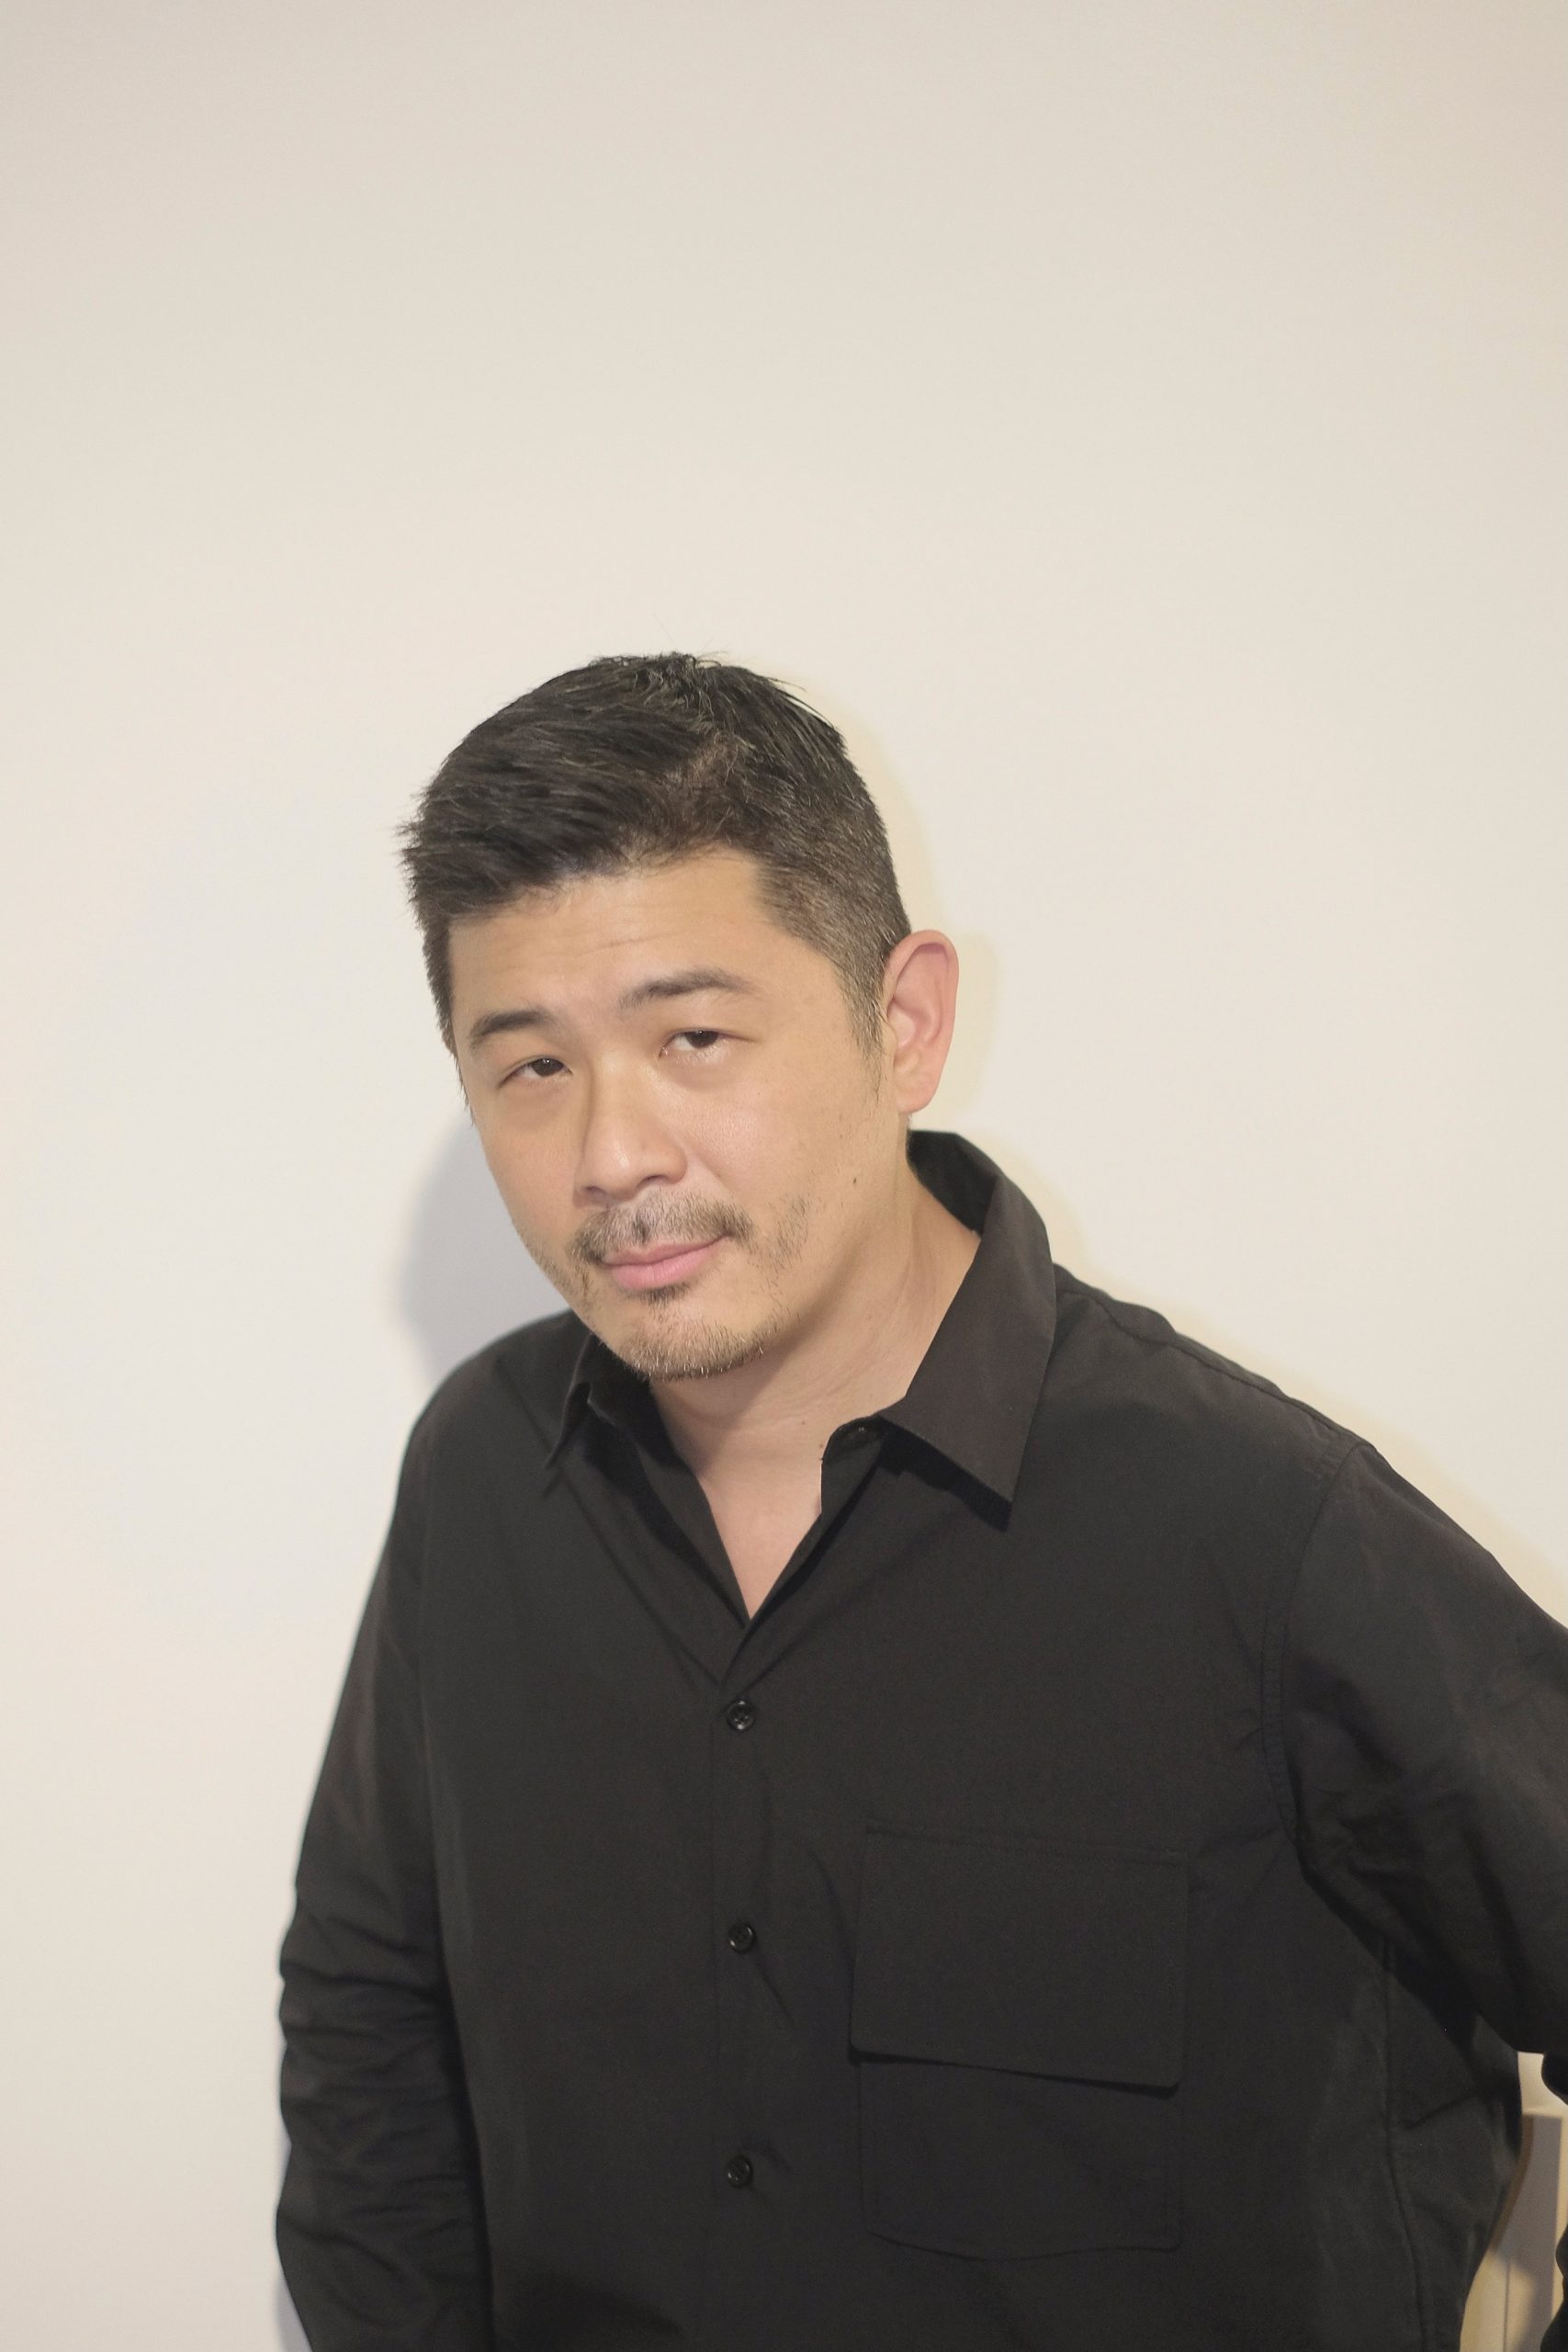 Curator Aric Chen